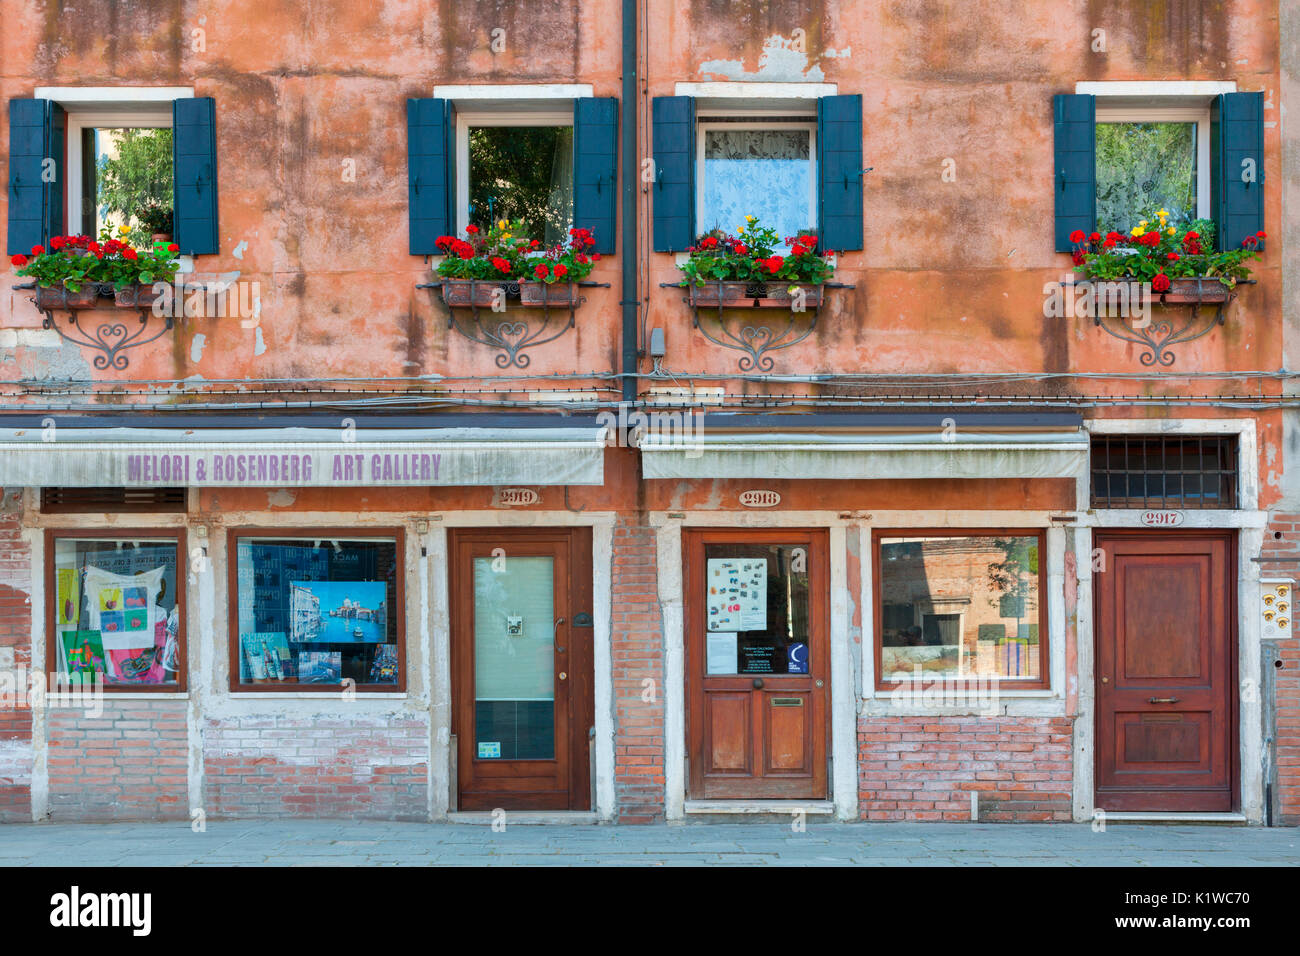 L'Europa, Italia e Venezia. Dettaglio delle vetrine nel vecchio quartiere ebraico Foto Stock